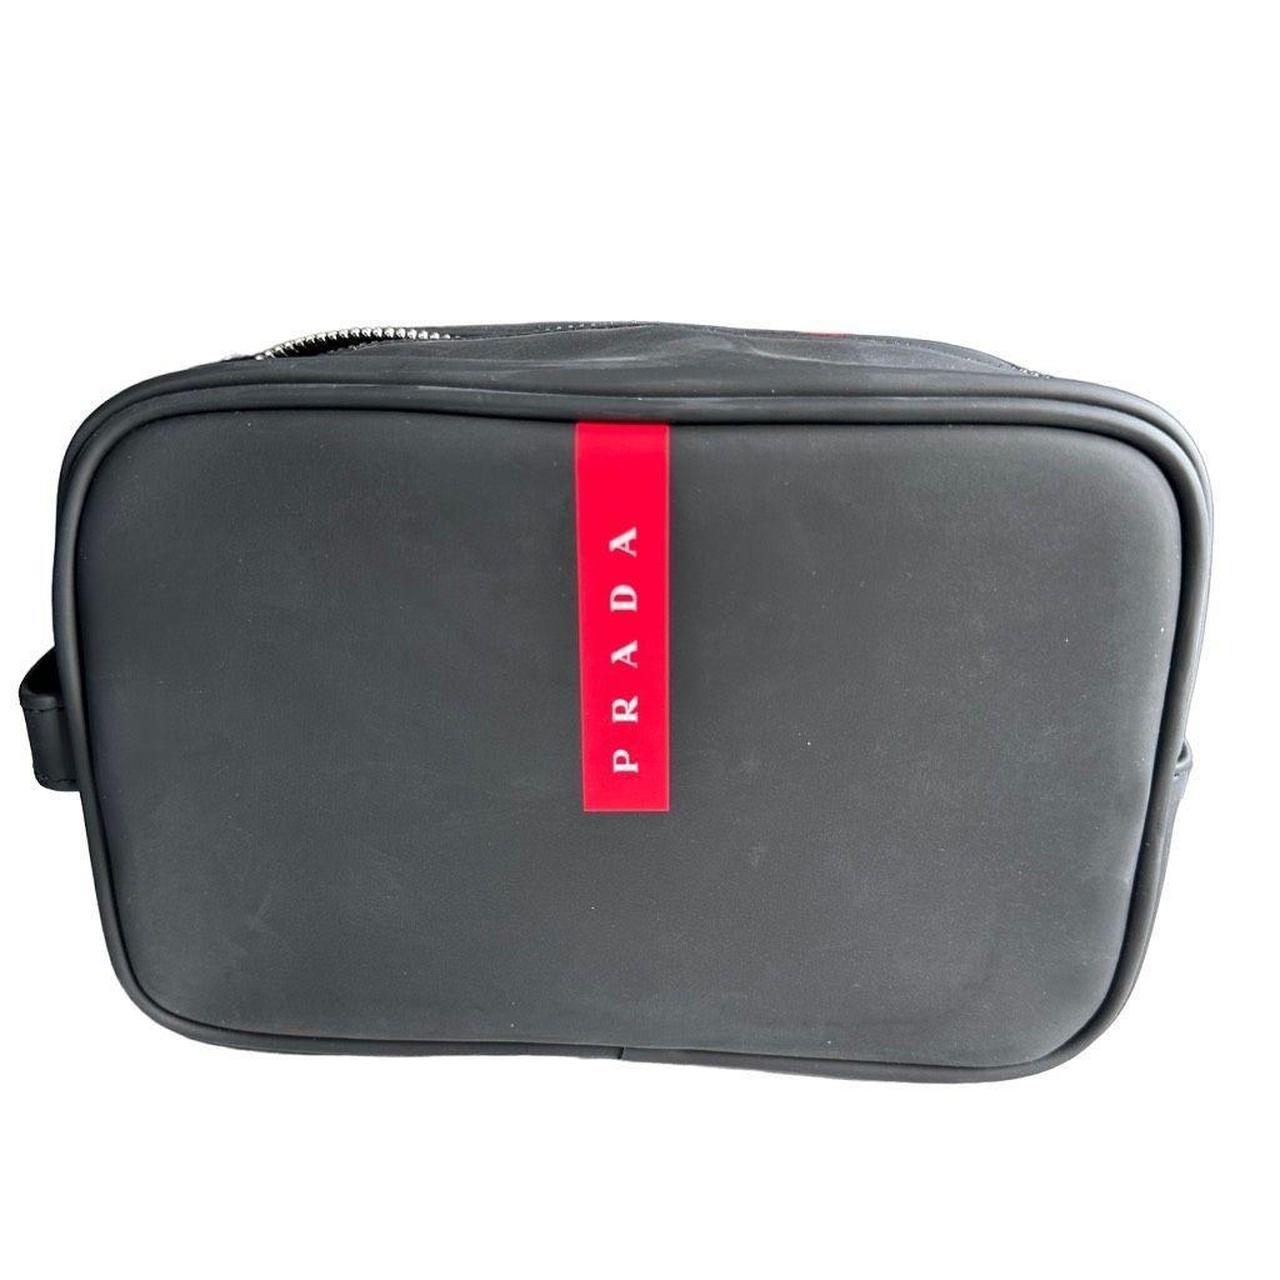 Prada, Bags, Prada Luna Rossa Limited Edition Blue Travel Toiletry Bag